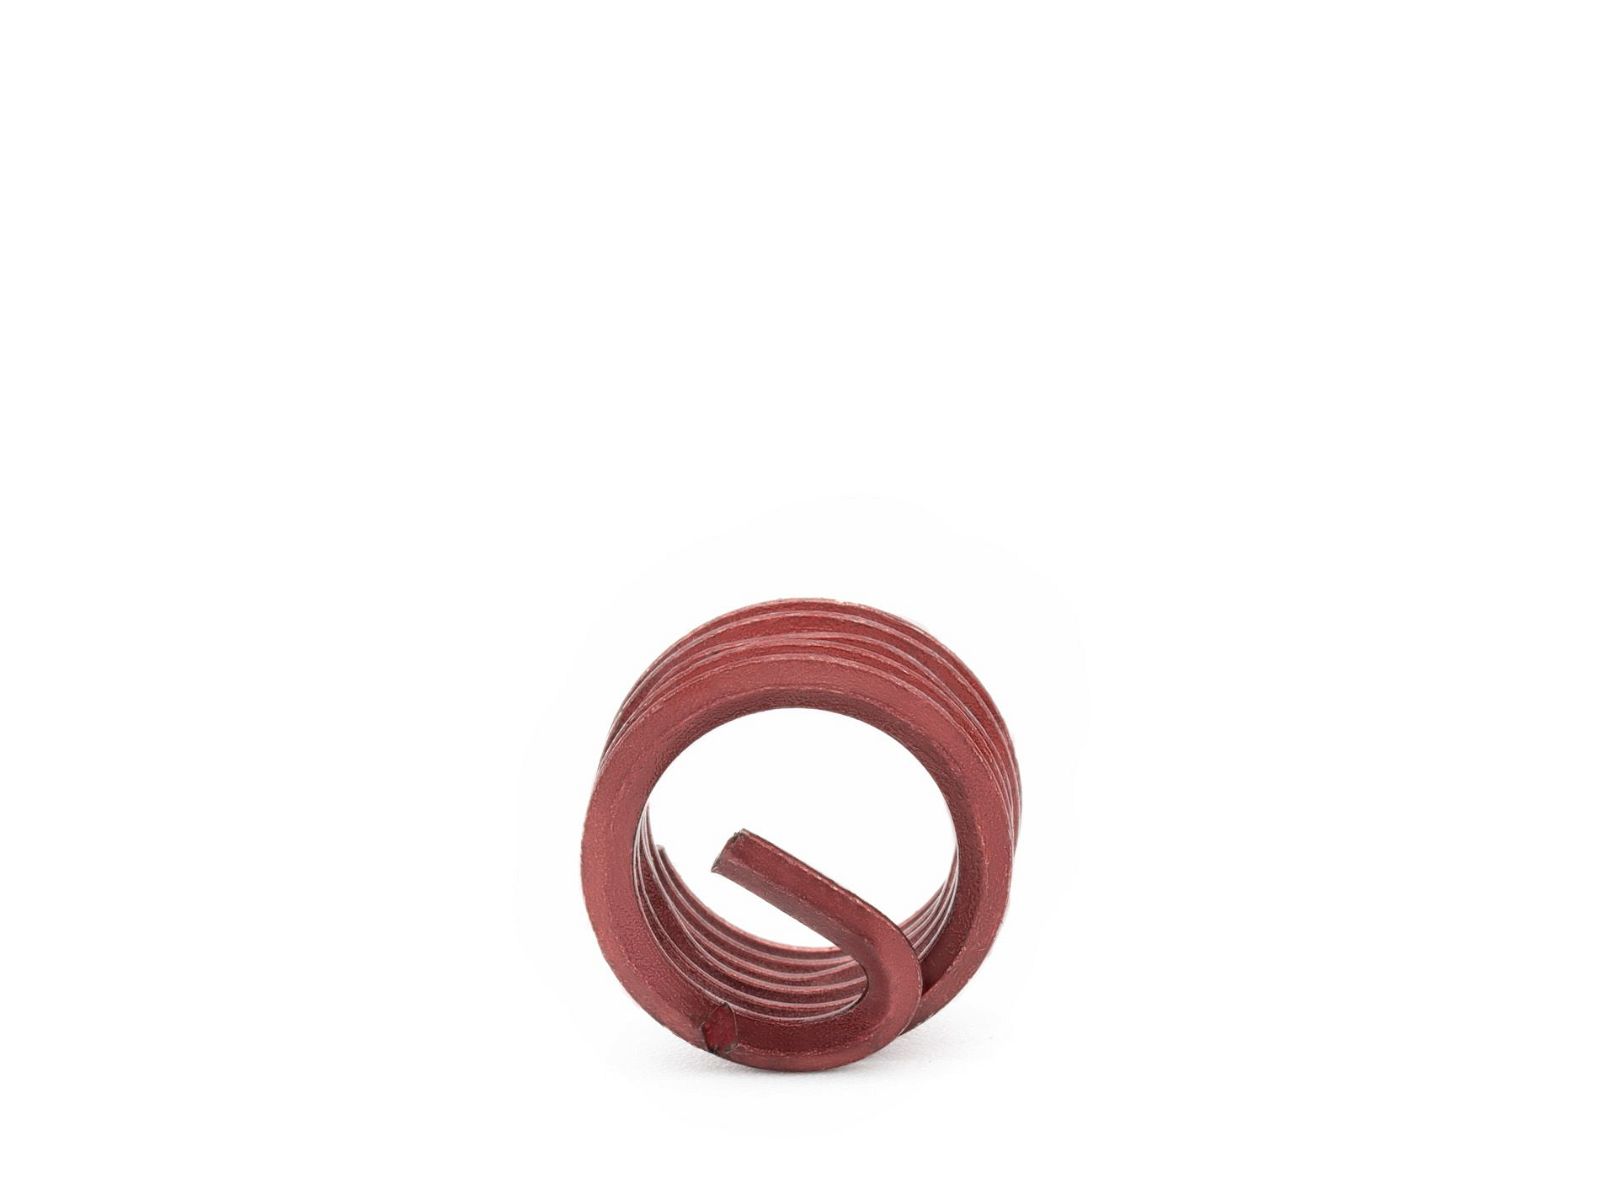 BaerCoil Wire Thread Inserts BSF 3/16 x 32 - 1.0 D (4.76 mm) - screw grip (screw locking) - 100 pcs.